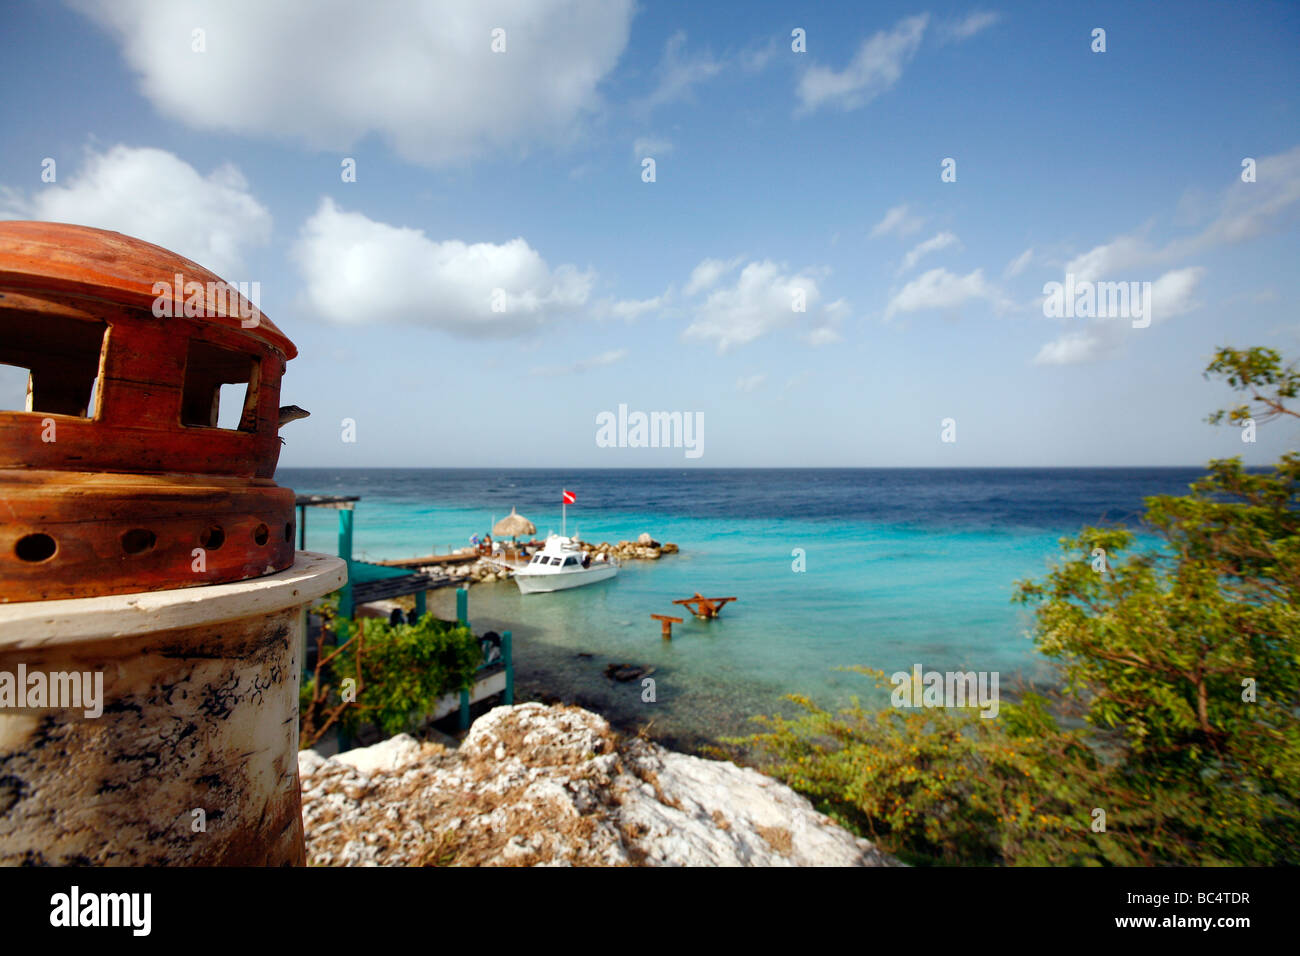 Vue sur l'océan de l'île des Caraïbes Curaçao dans les Antilles néerlandaises. Phare du modèle et d'une mer bleue sont visibles Banque D'Images